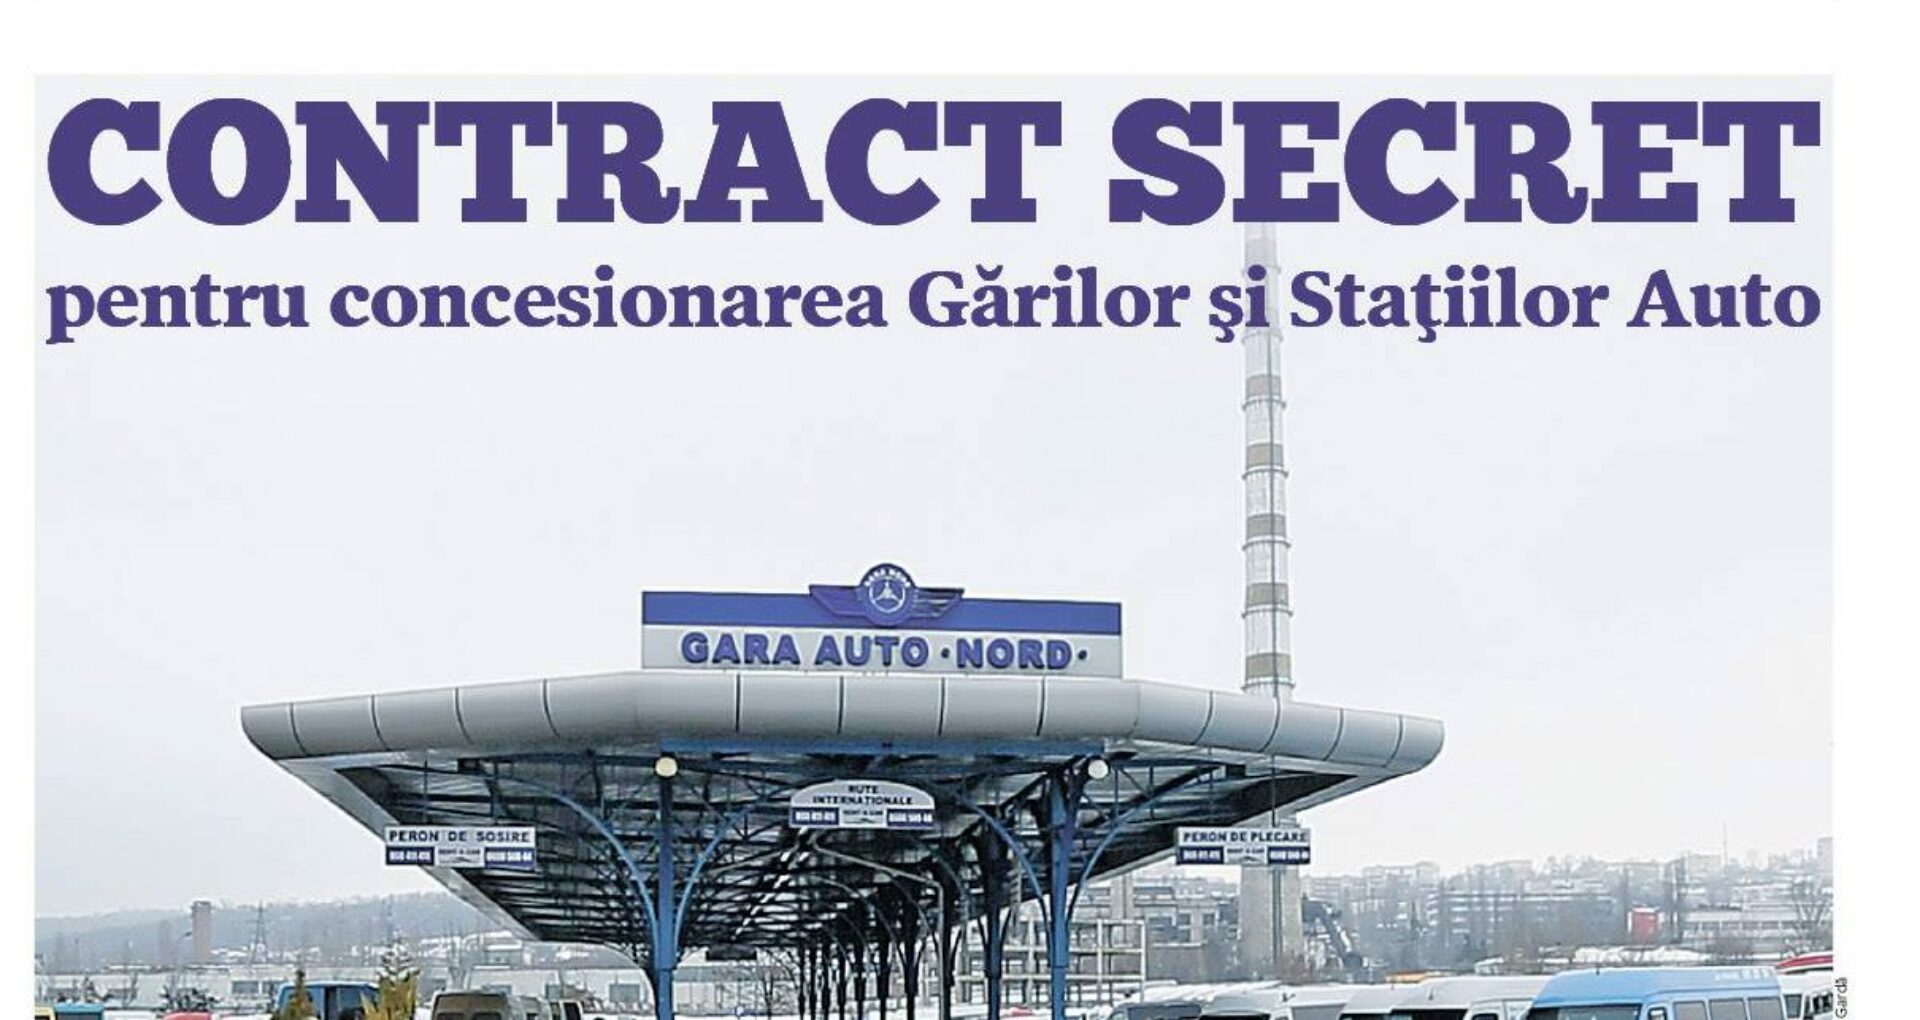 Citiți astăzi în ZdG: Contract secret pentru concesionarea Gărilor și Stațiilor Auto